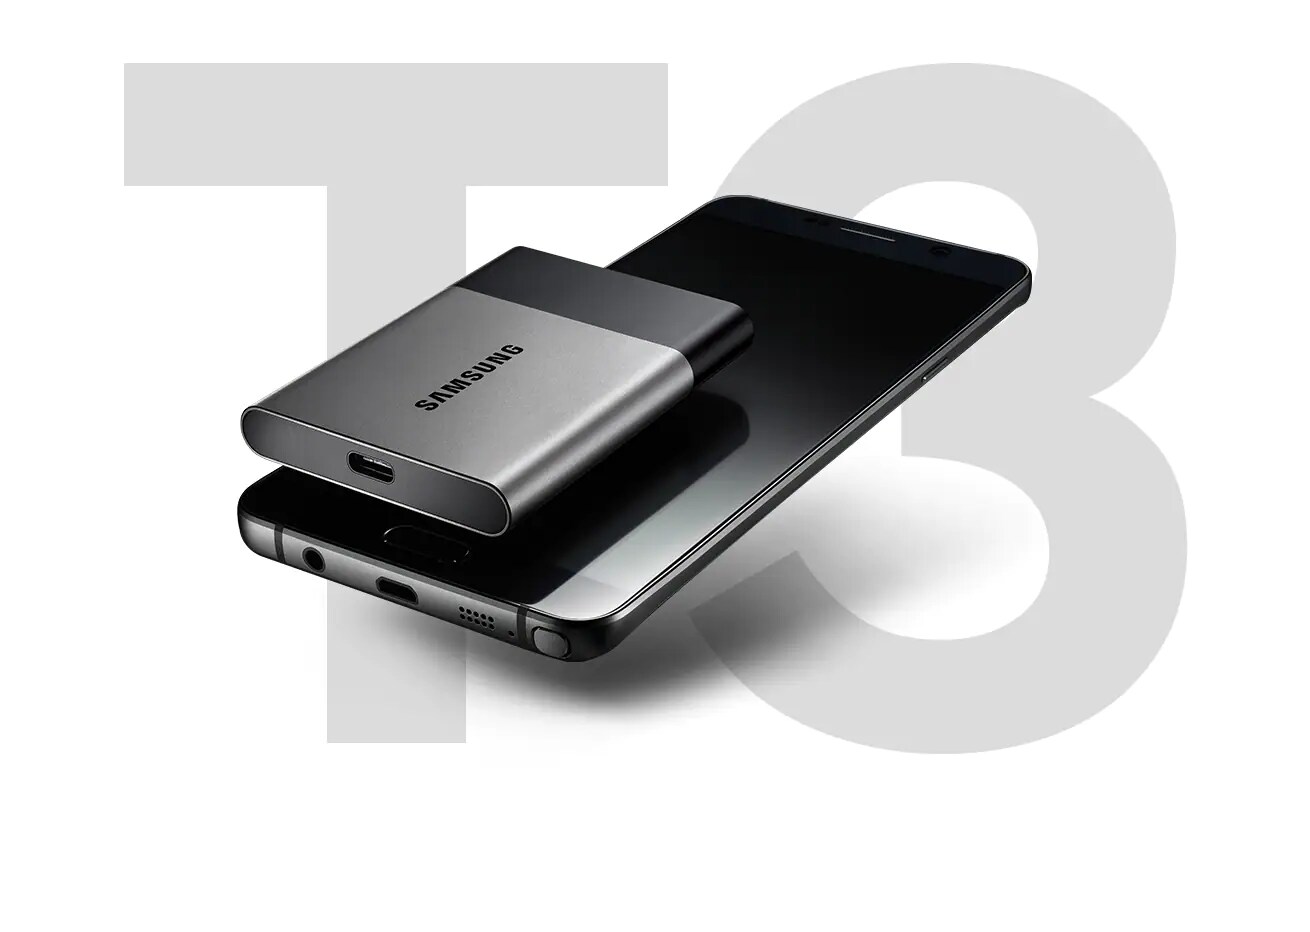 Portable SSD T3 500GB Memory & Storage - MU-PT500B/AM